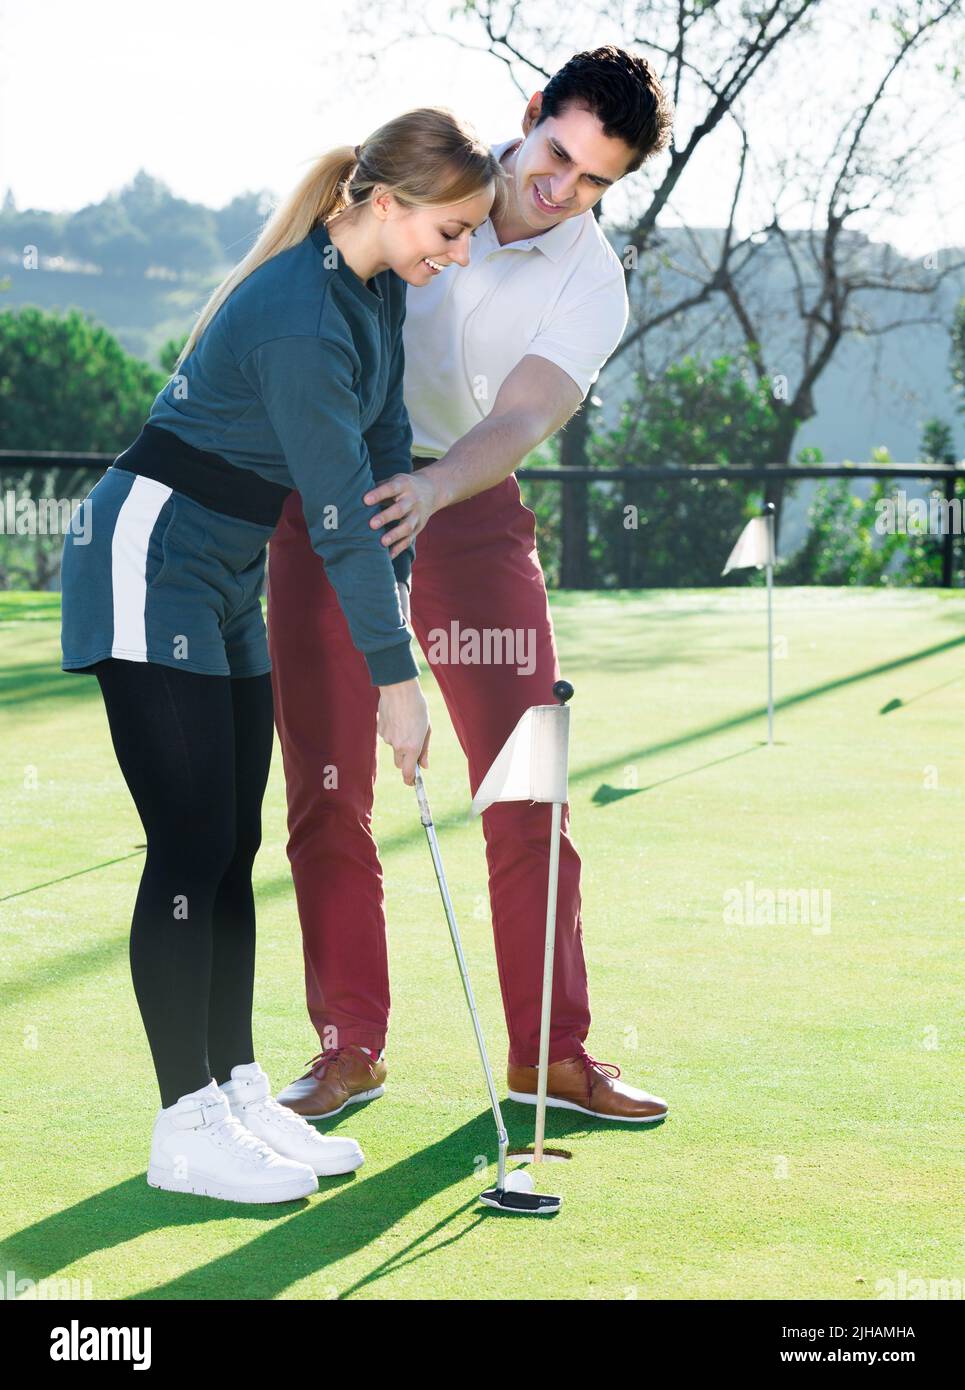 Le jeune homme forme une femme pour jouer au golf Banque D'Images